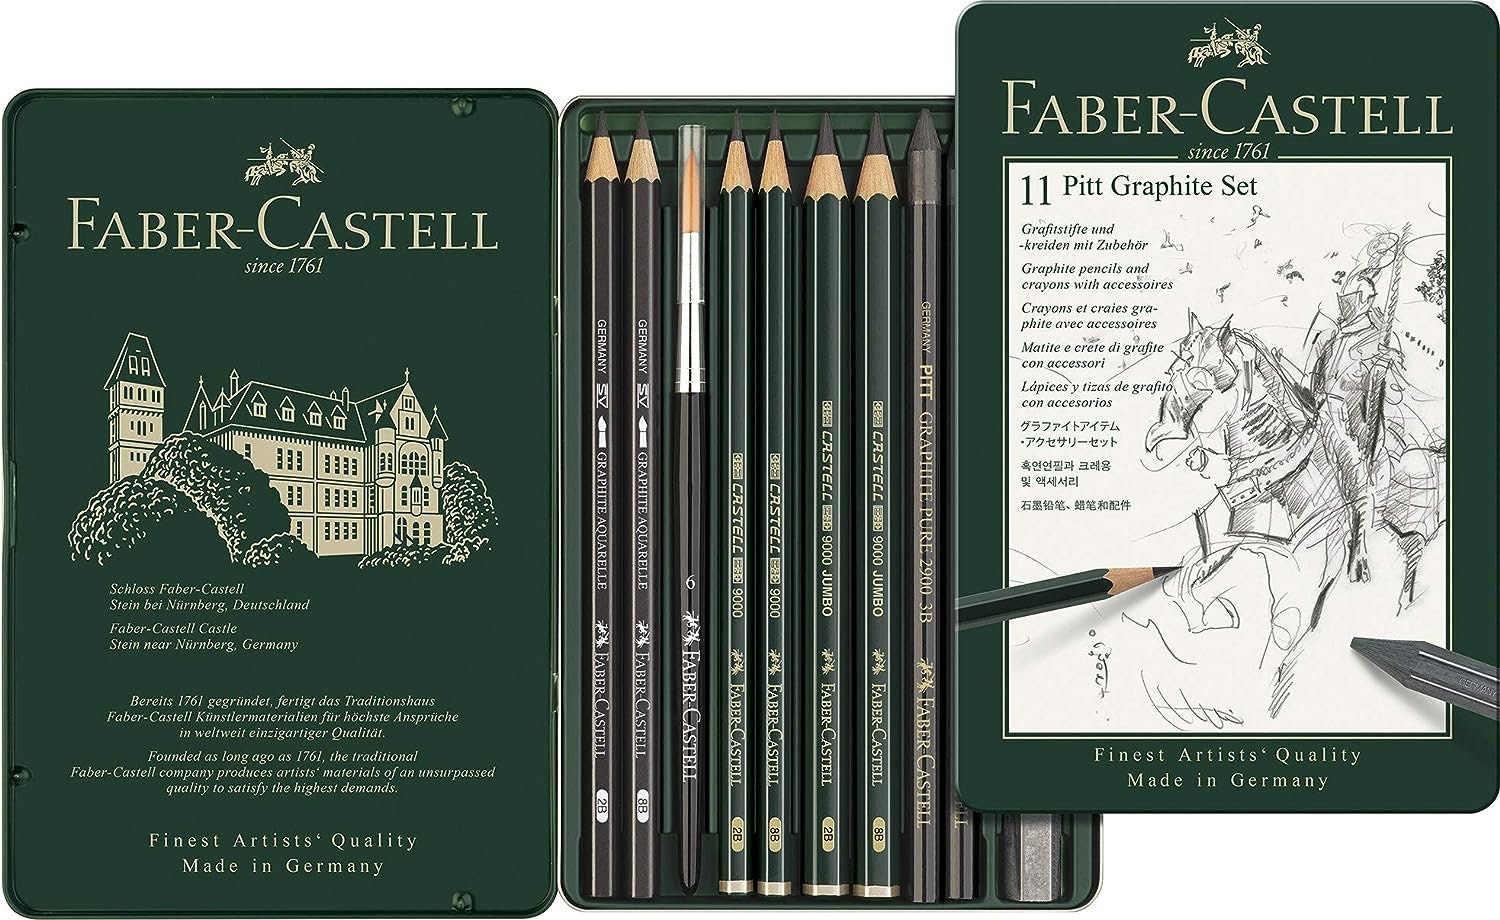 Faber-Castell Pitt Monochrome Drawing Assortment